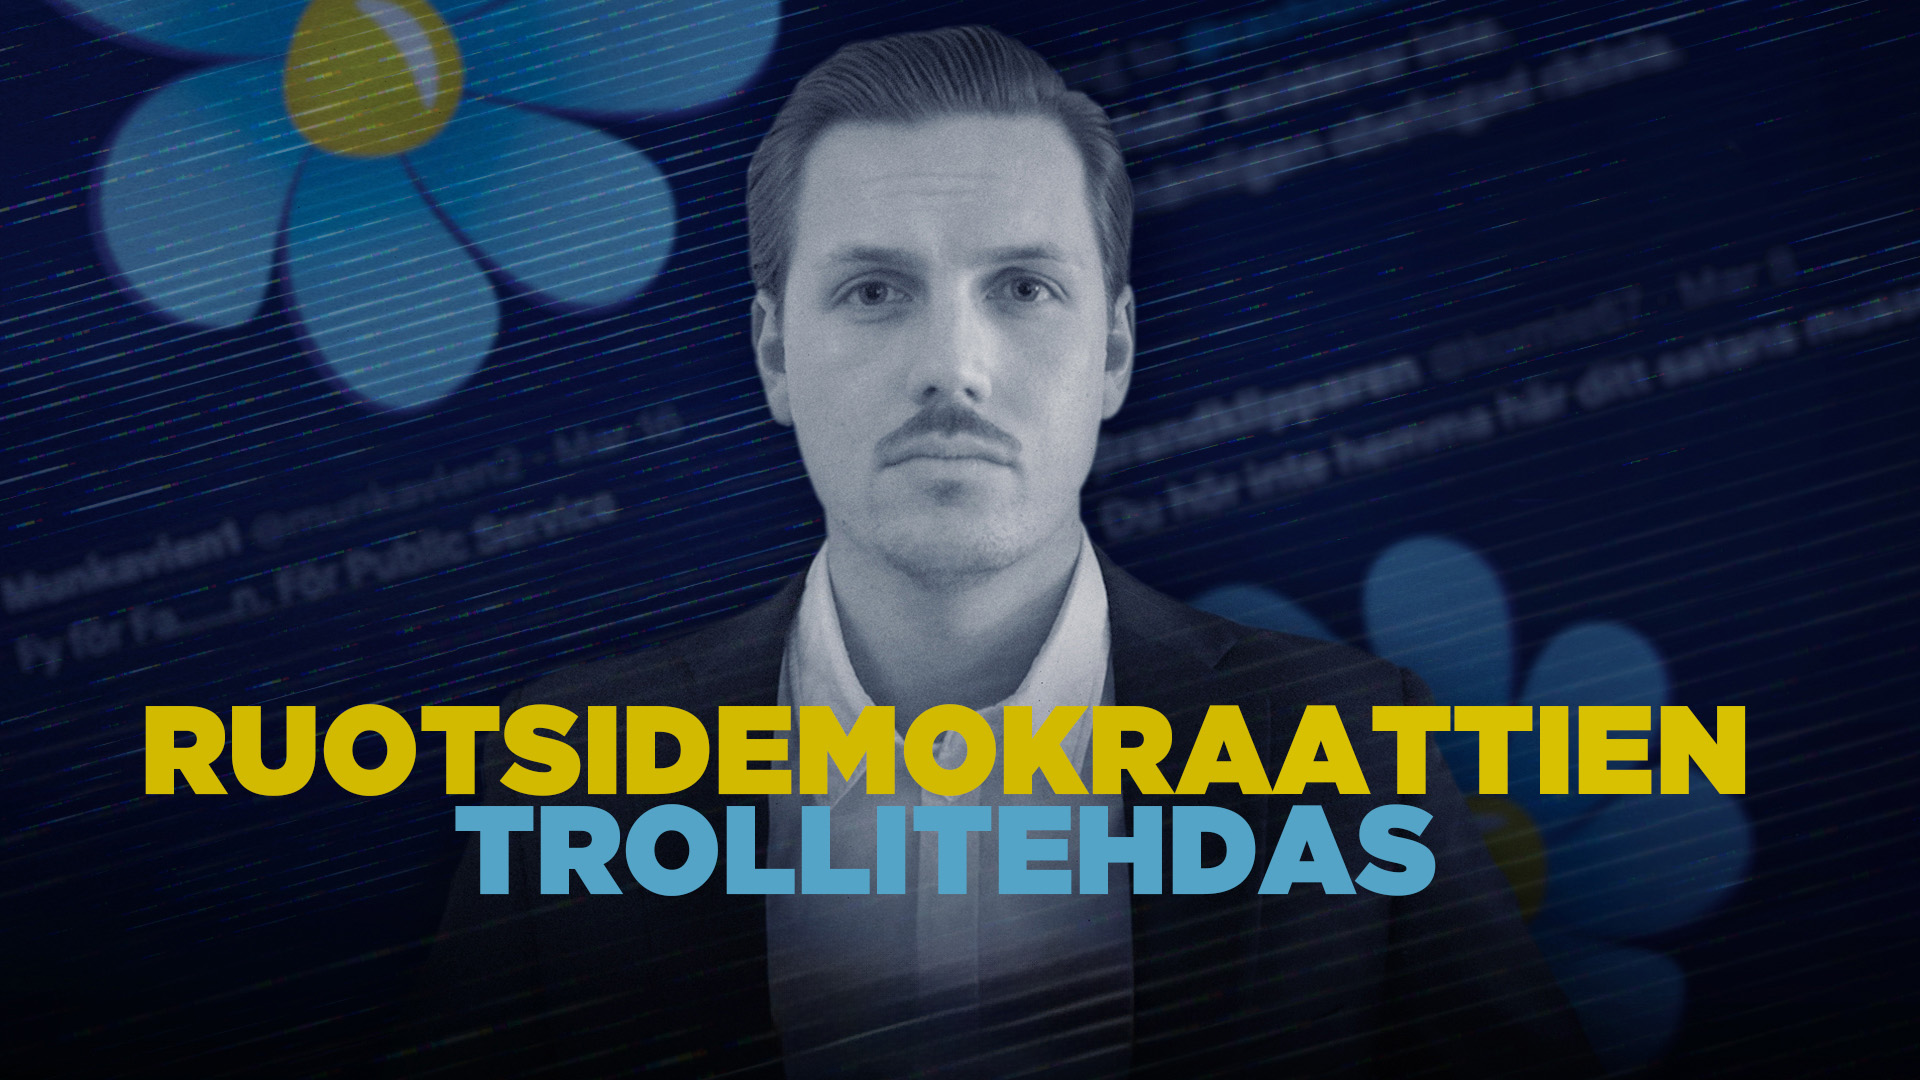 Ruotsidemokraattien trollitehdas